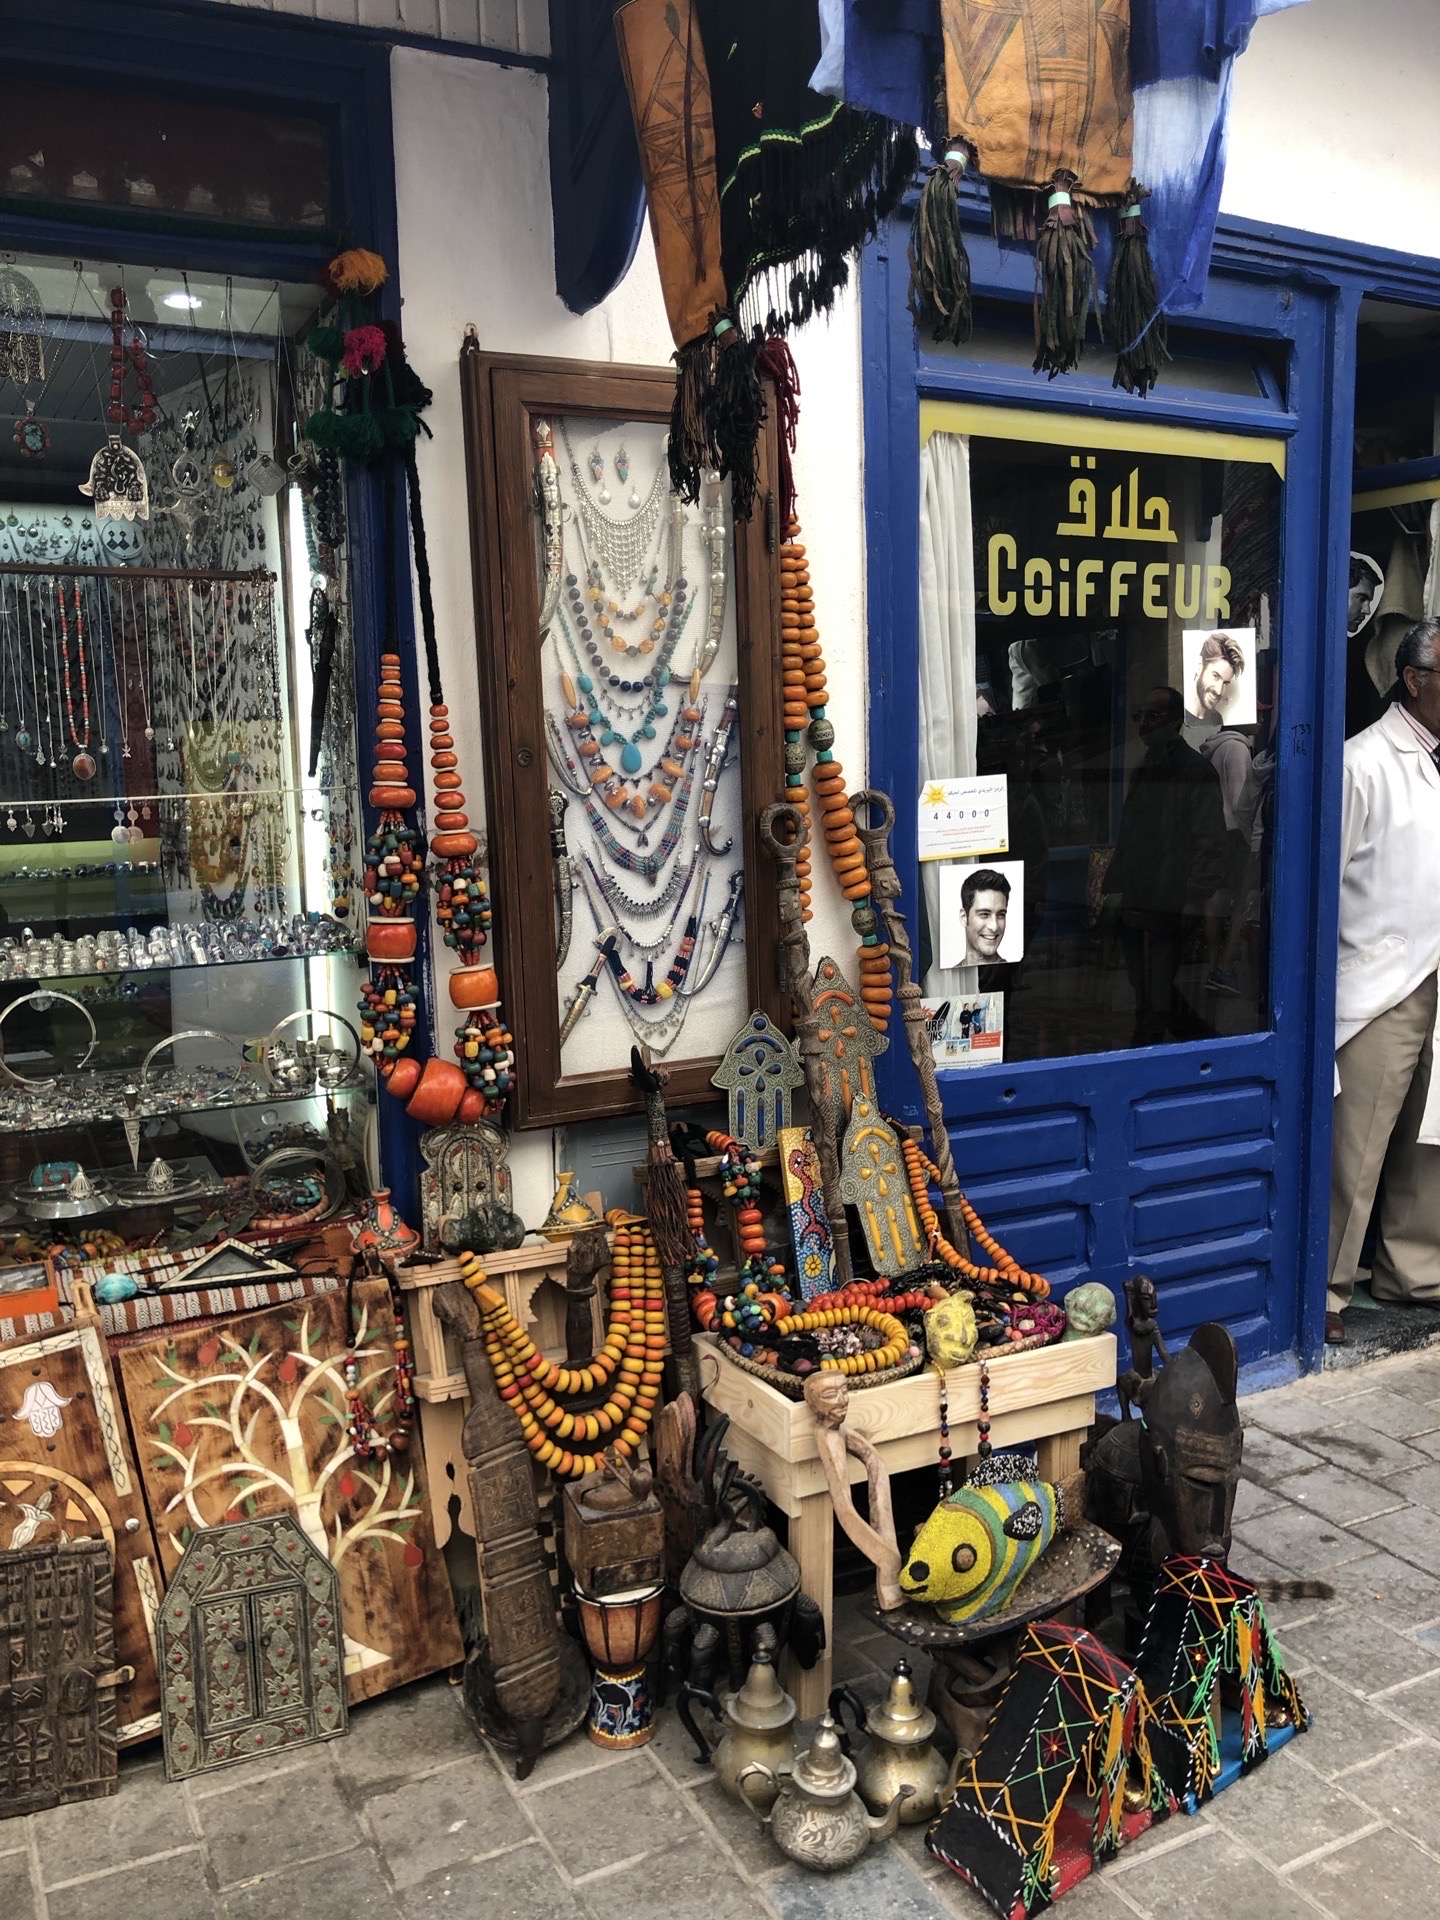 真❤️喜歡摩洛哥，它的文化色彩十分濃厚。索維拉，一個海边小城，度假勝地。因是海邊，夏天也不感覺很熱，